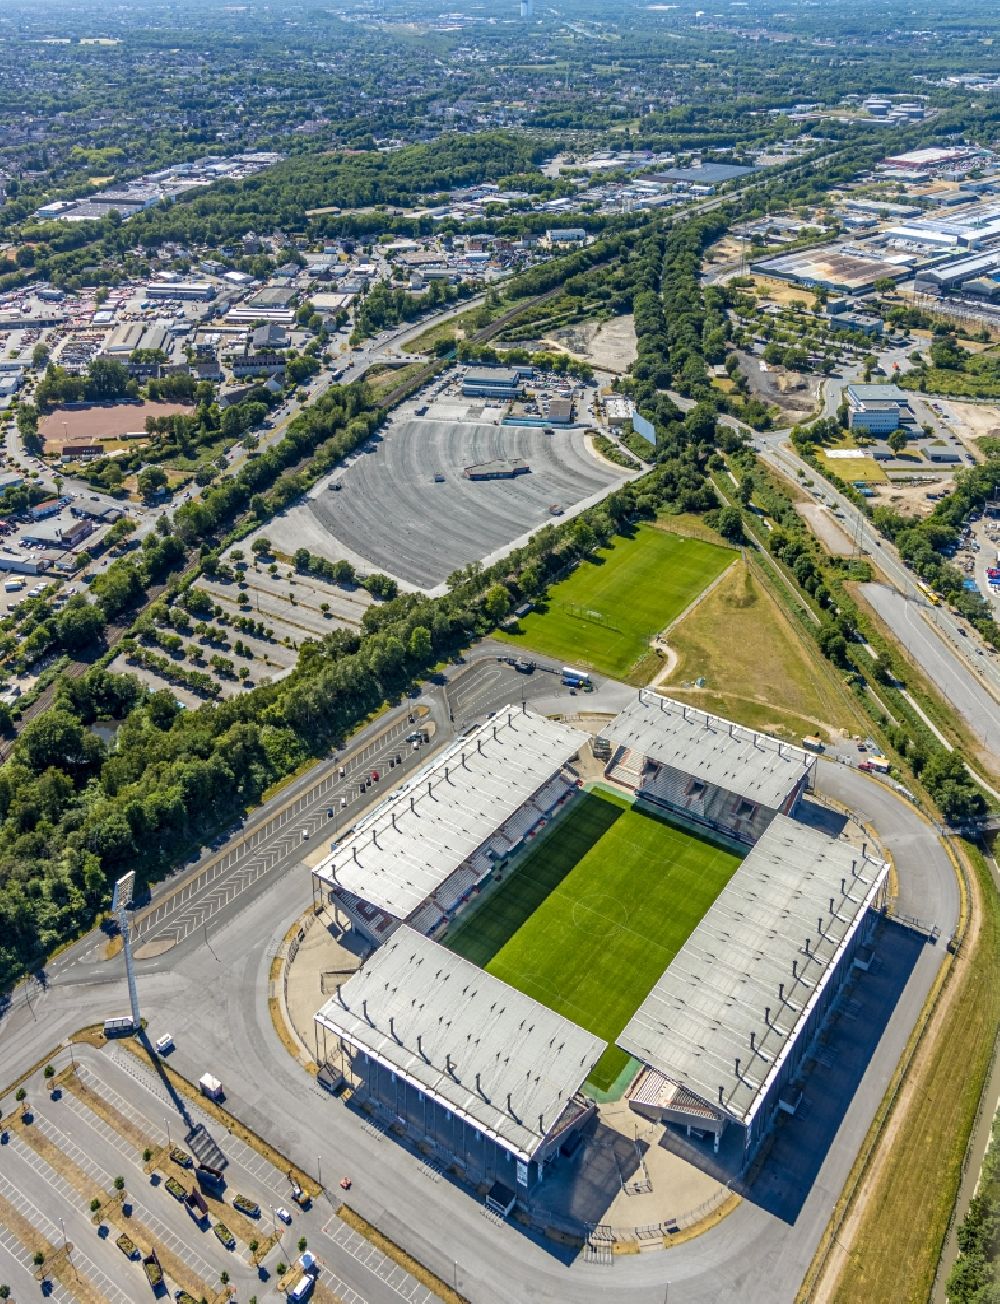 Essen from above - RWE - Red-White Stadium in Essen in North Rhine-Westphalia